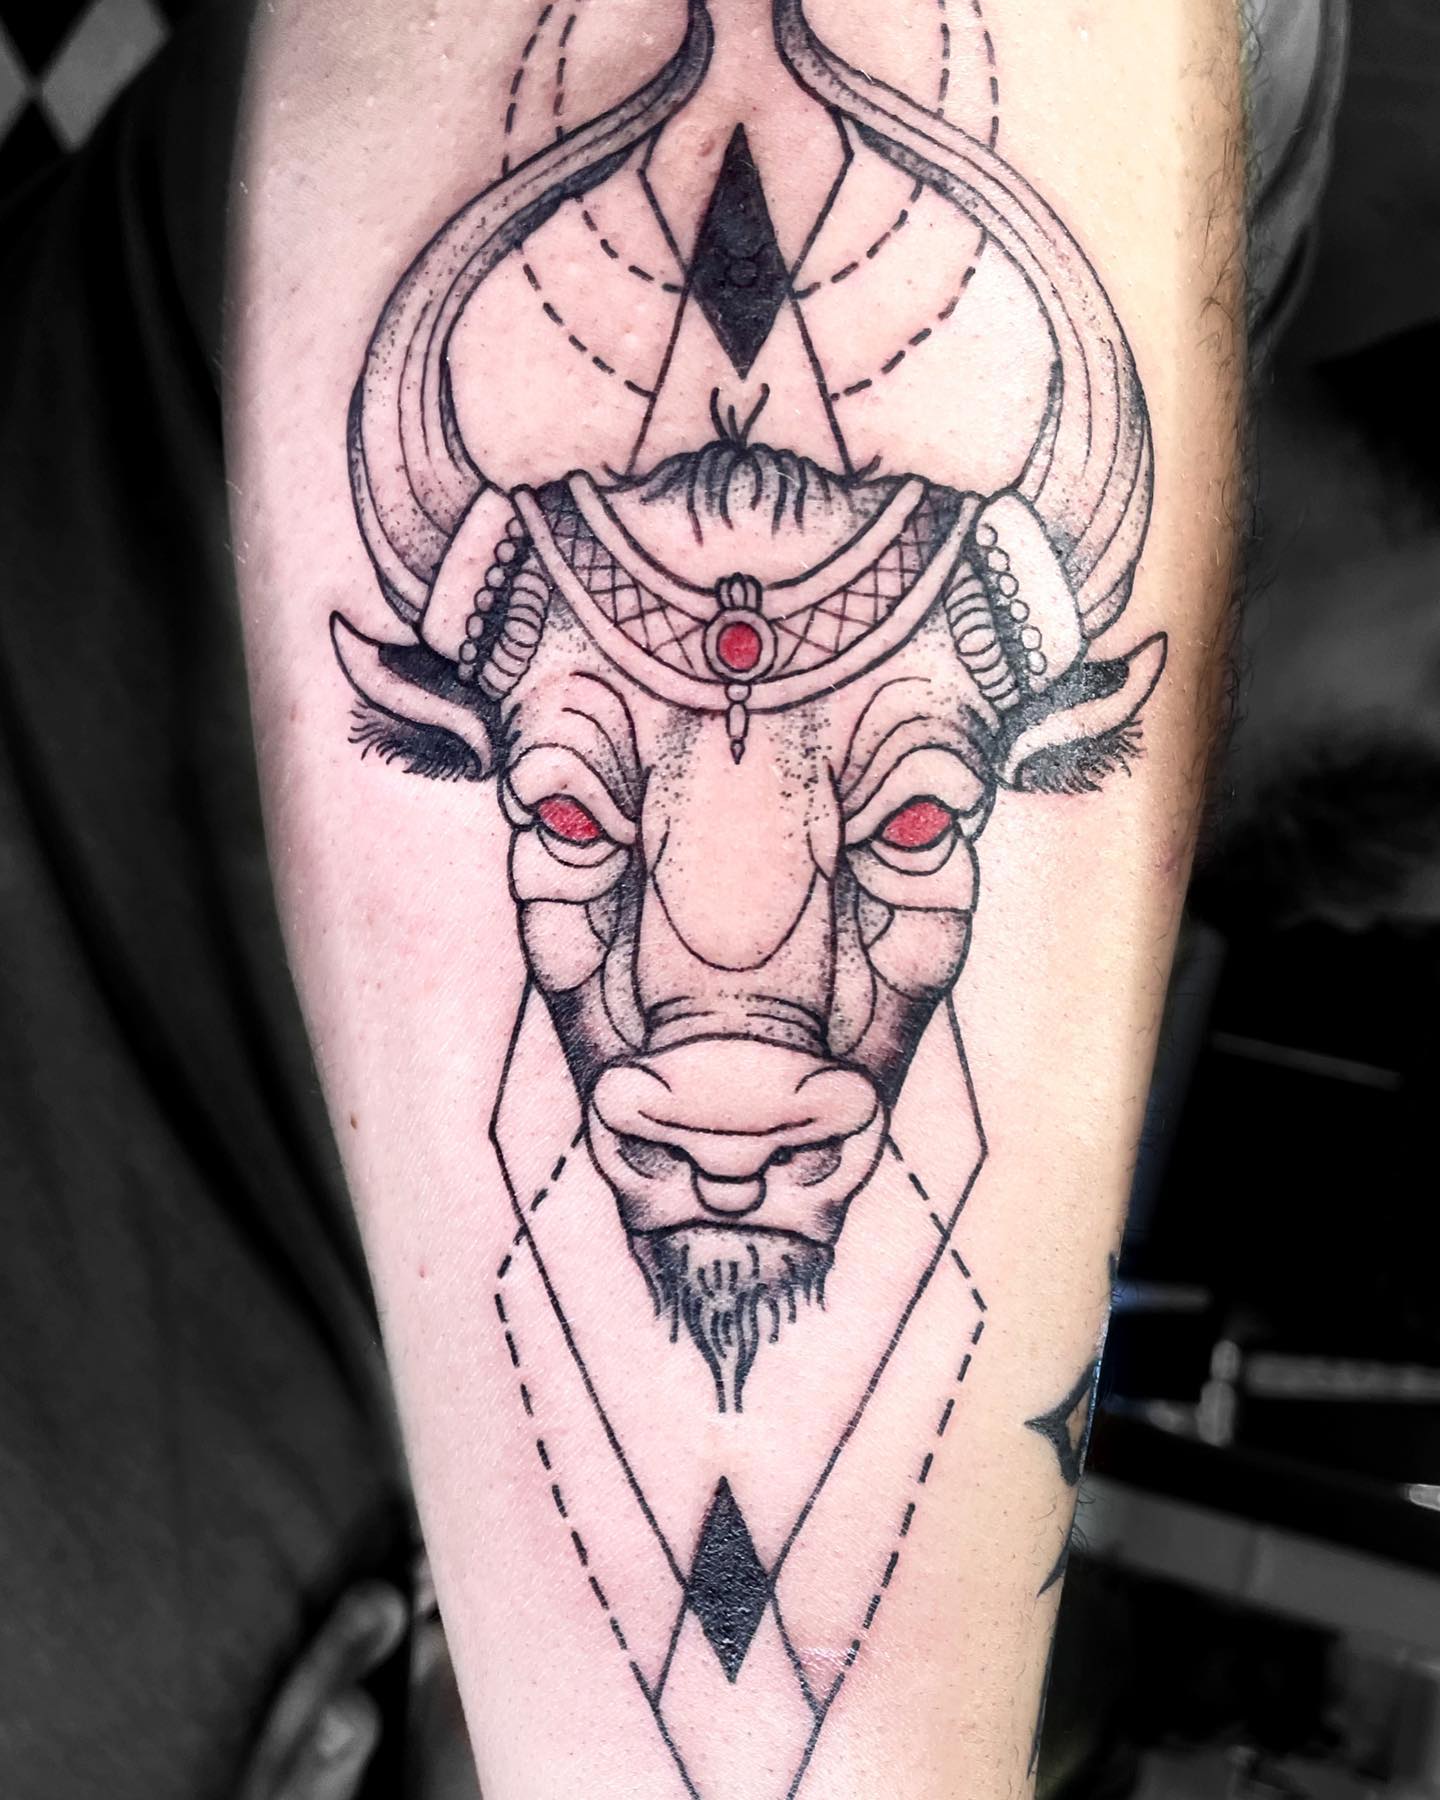 Tatuaje de Taurus negro y rojo en el pecho.